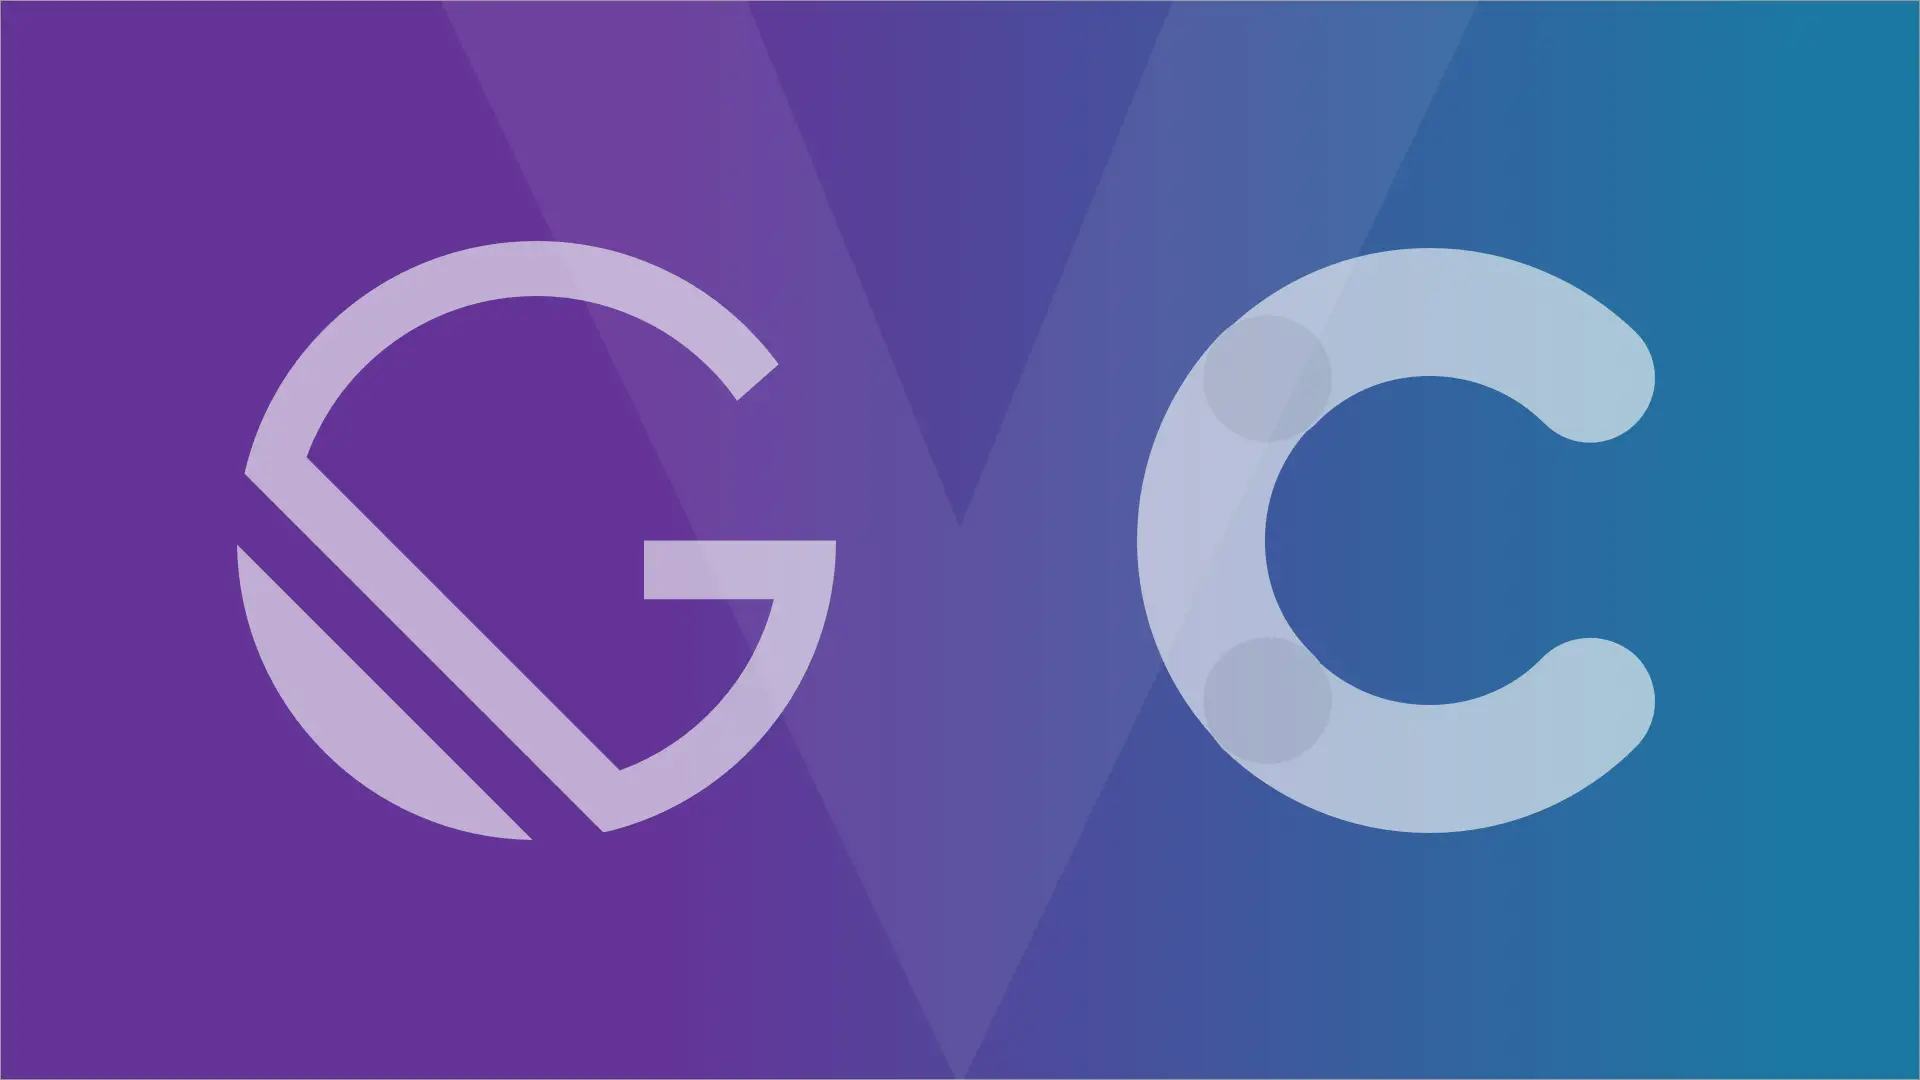 Das Gatsby- und das Contentful-Logo auf lila-blauem Hintergrund. Hinter den beiden Buchstaben ist auch das V von VOLL zu sehen.